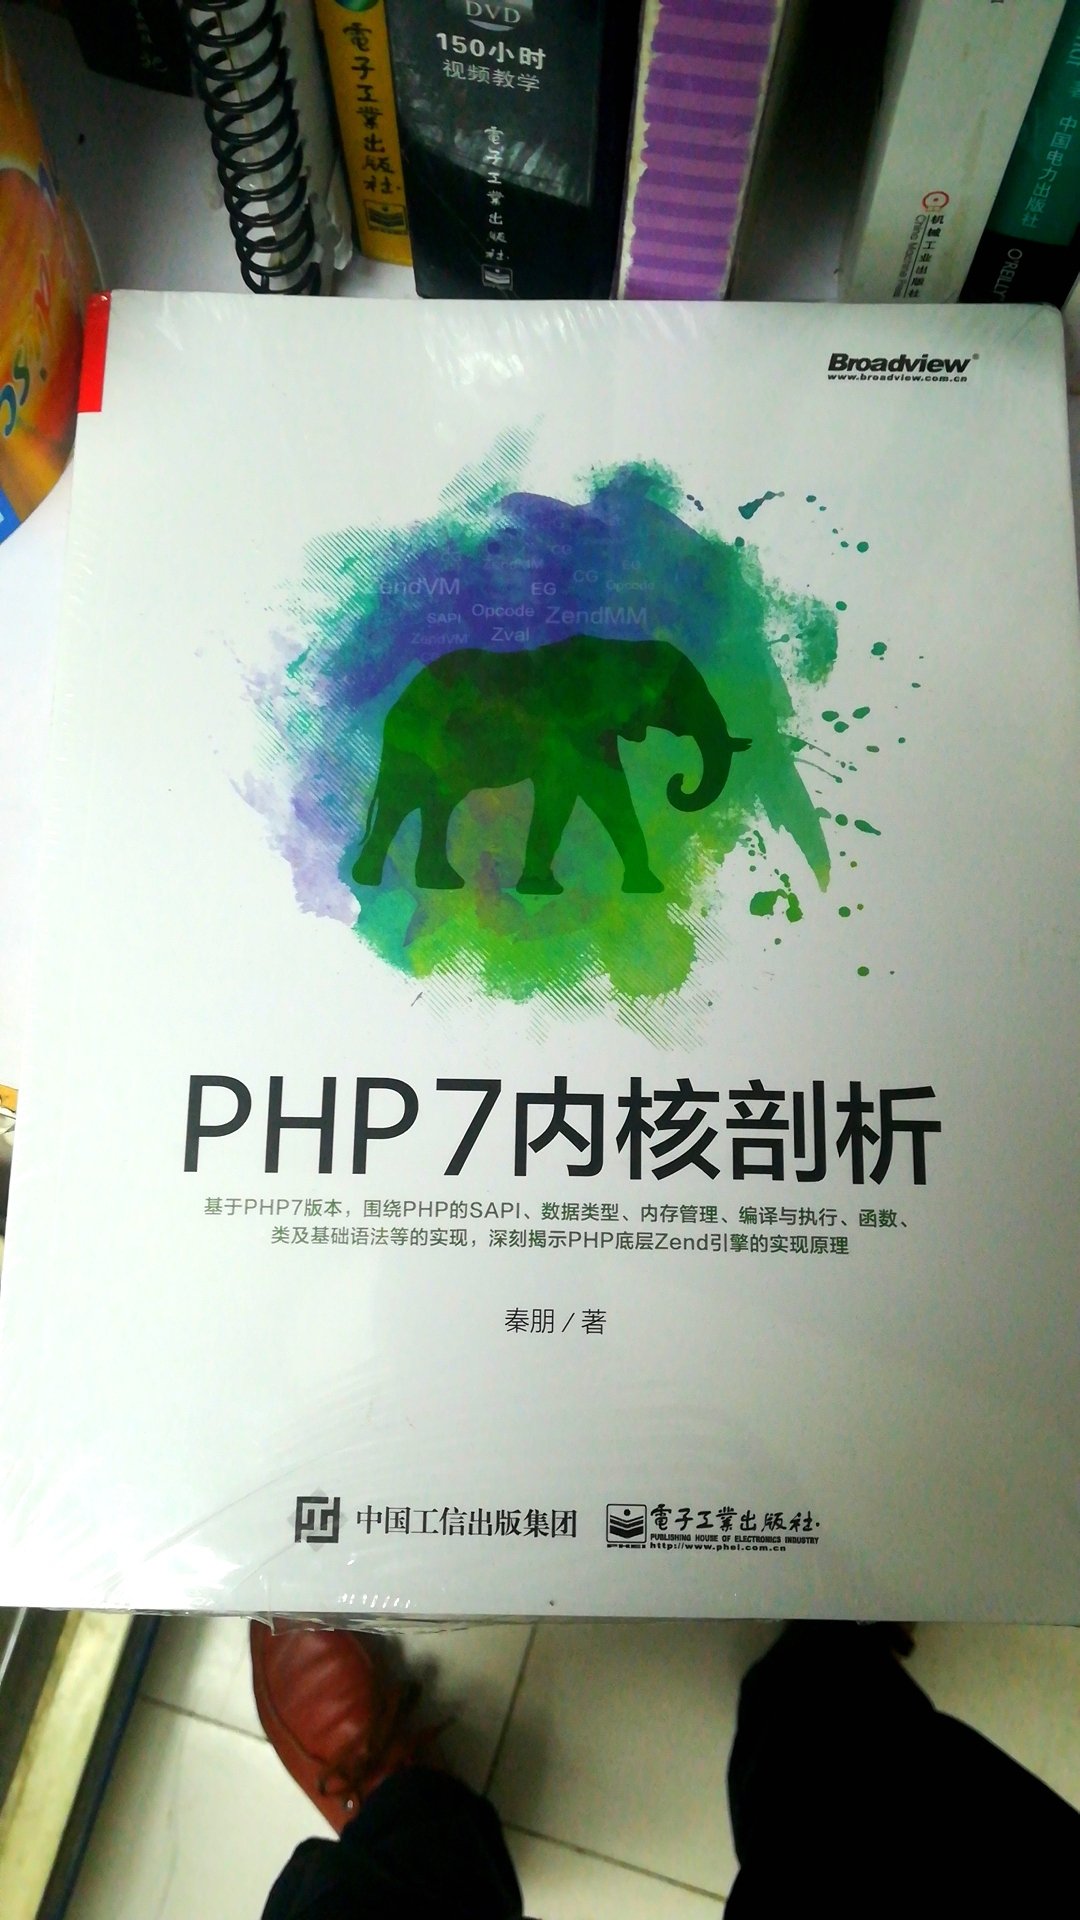 嗯，学习下PHP的还没有看，看完再评。